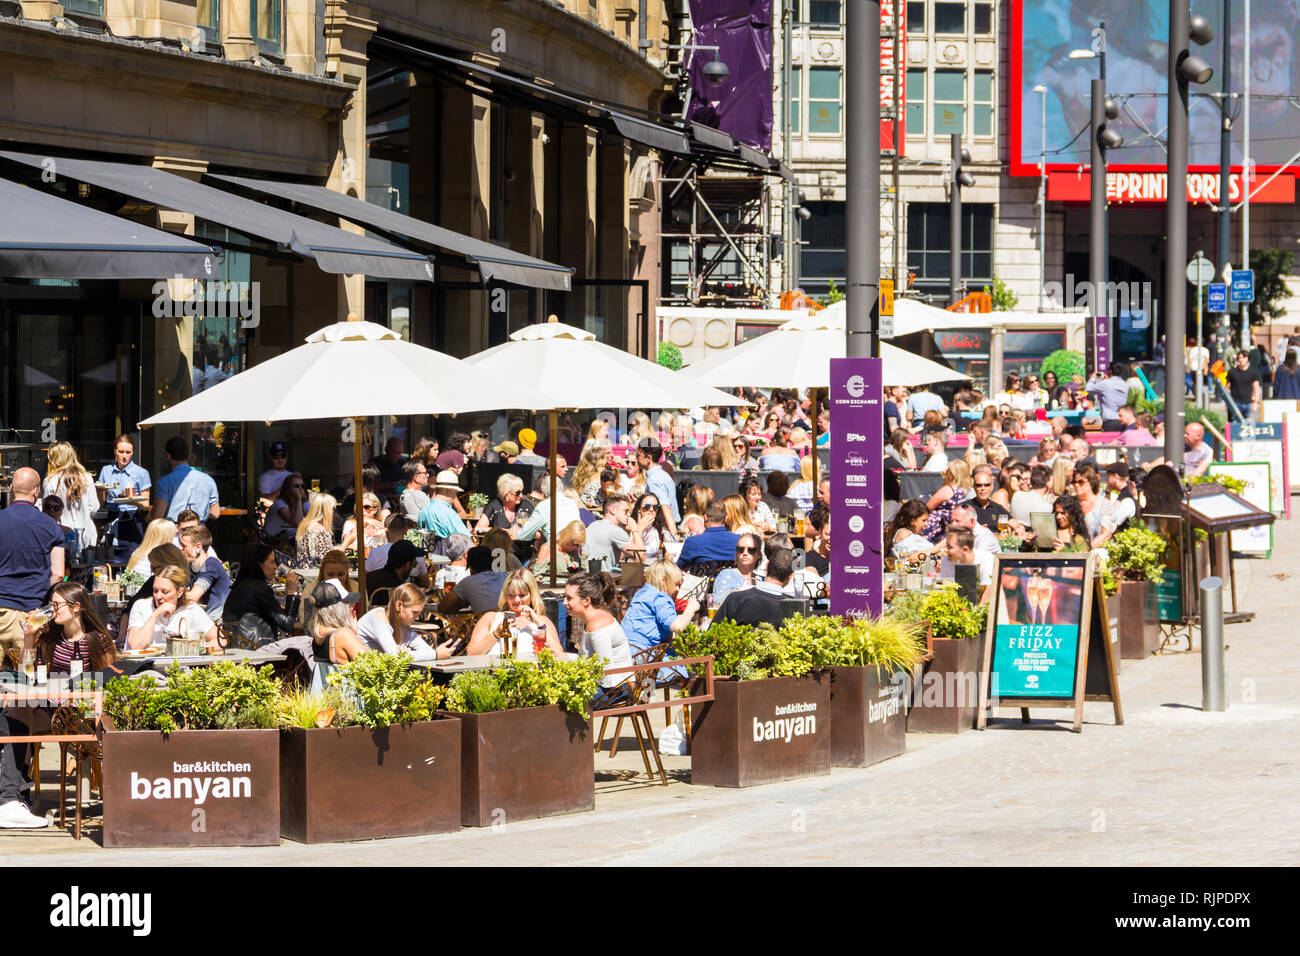 Un día de verano en el centro de la ciudad de Manchester con muchas personas se sentaron a comer y beber fuera de Banyan Bar y otros restaurantes y bares del triángulo, por Foto de stock